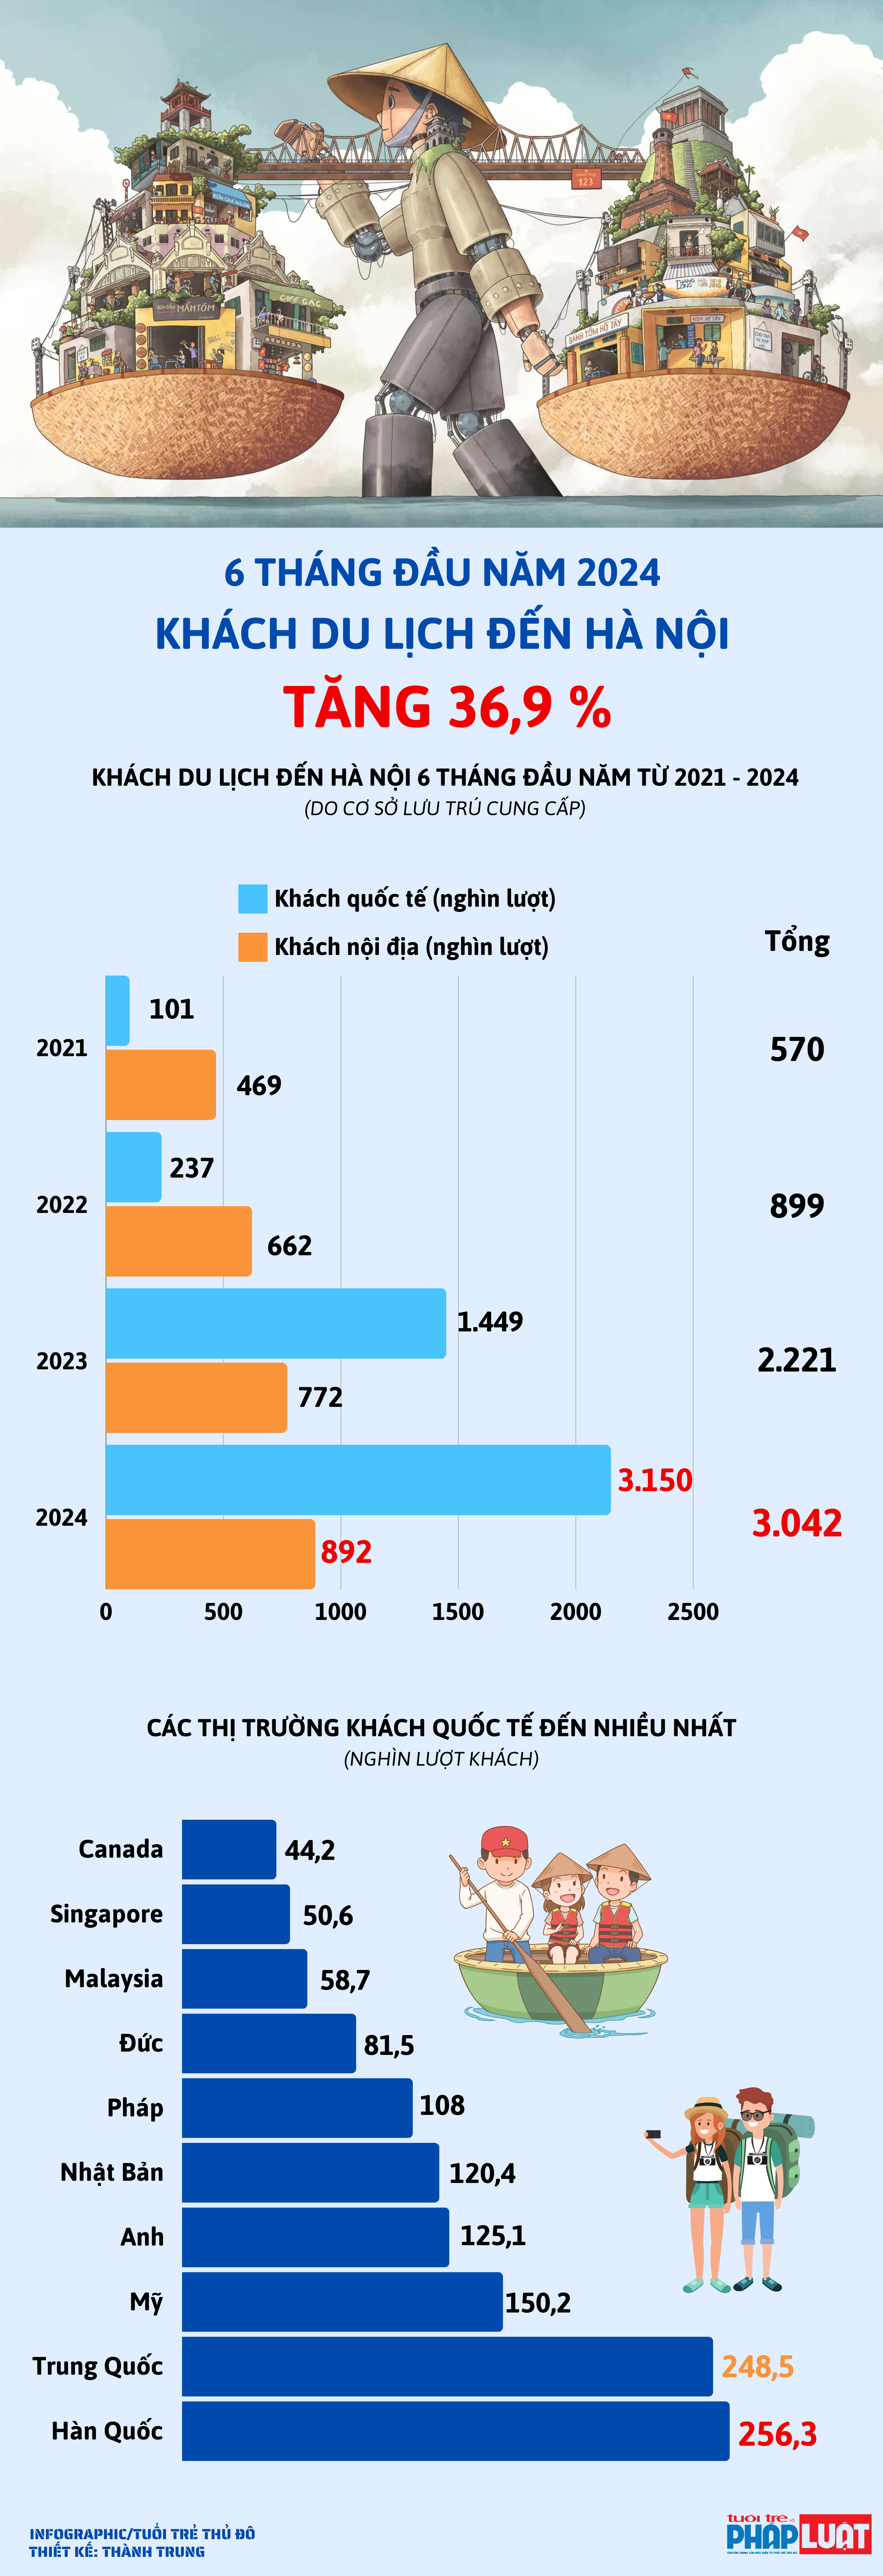 Khách du lịch đến Hà Nội tăng 36,9% trong 6 tháng đầu năm 2024